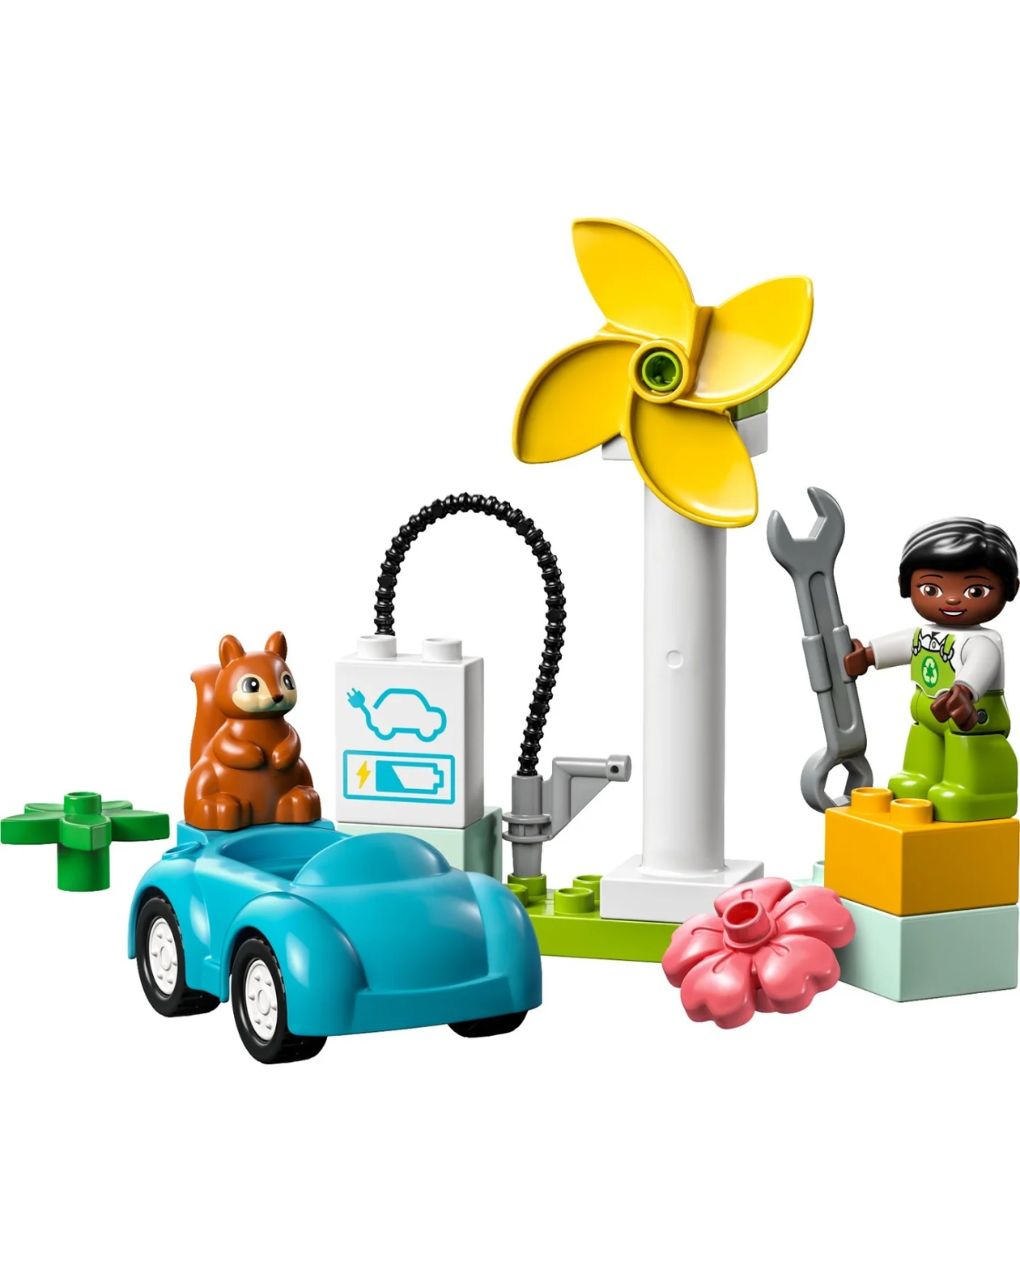 Lego duplo ανεμογεννήτρια και ηλεκτρικό αυτοκίνητο 10985 - LEGO DUPLO